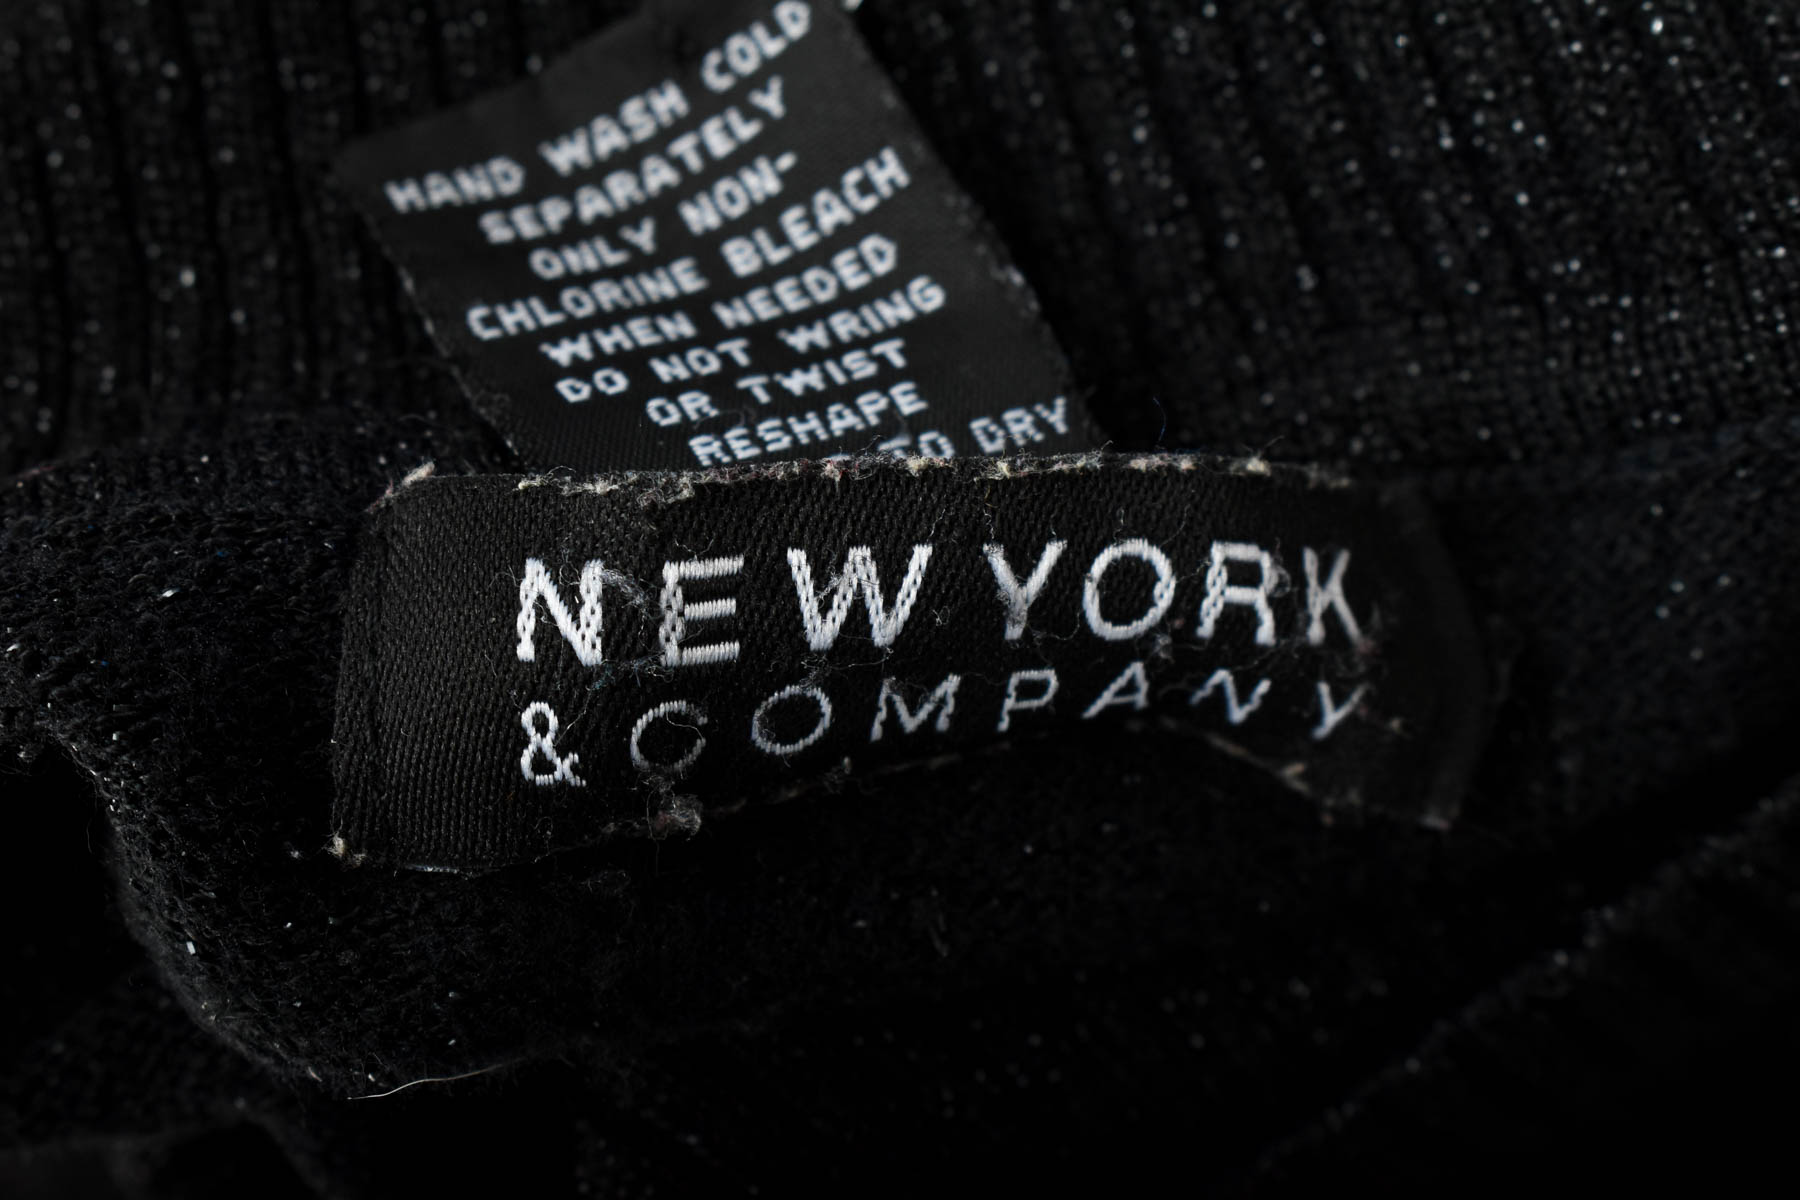 Sweter damski - New York & Company - 2